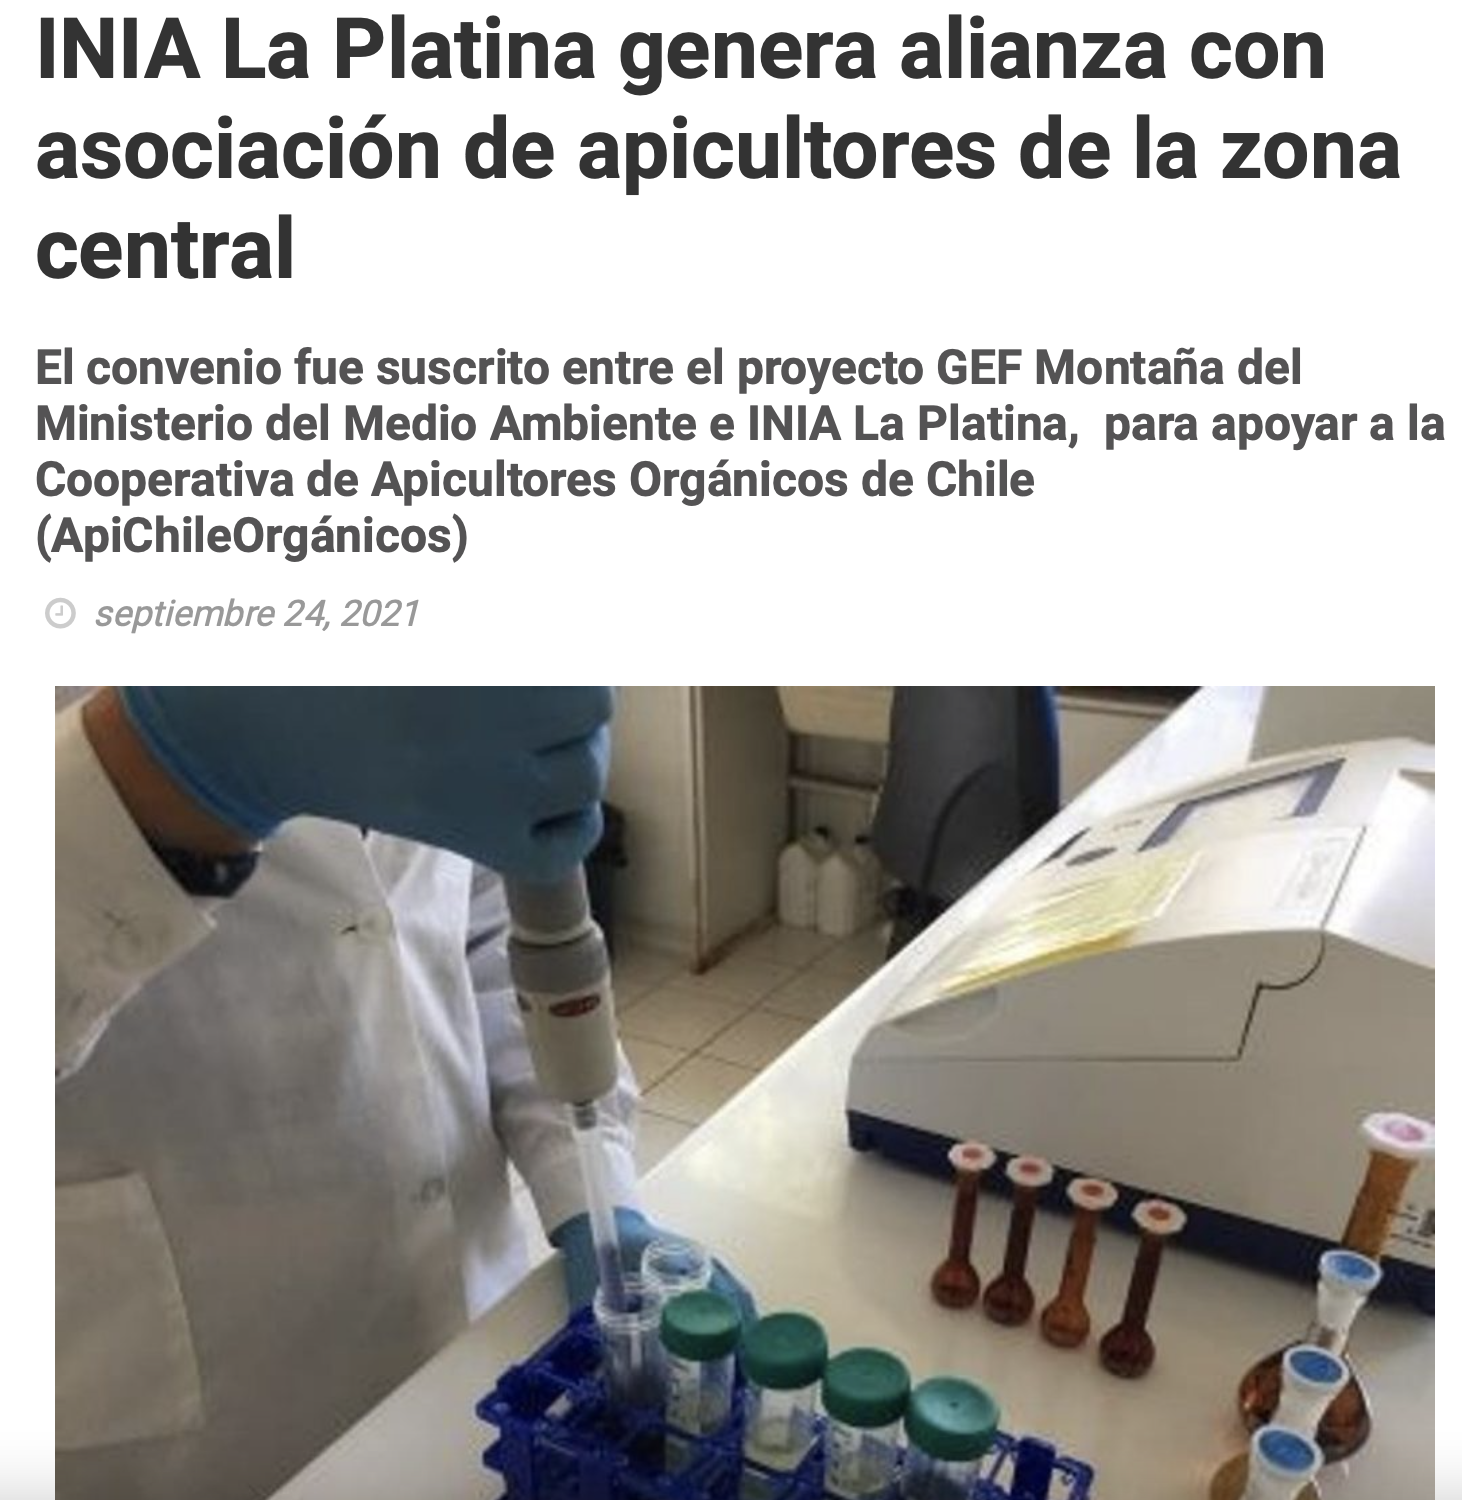 INIA La Platina genera alianza con asociación de apicultores de la zona central